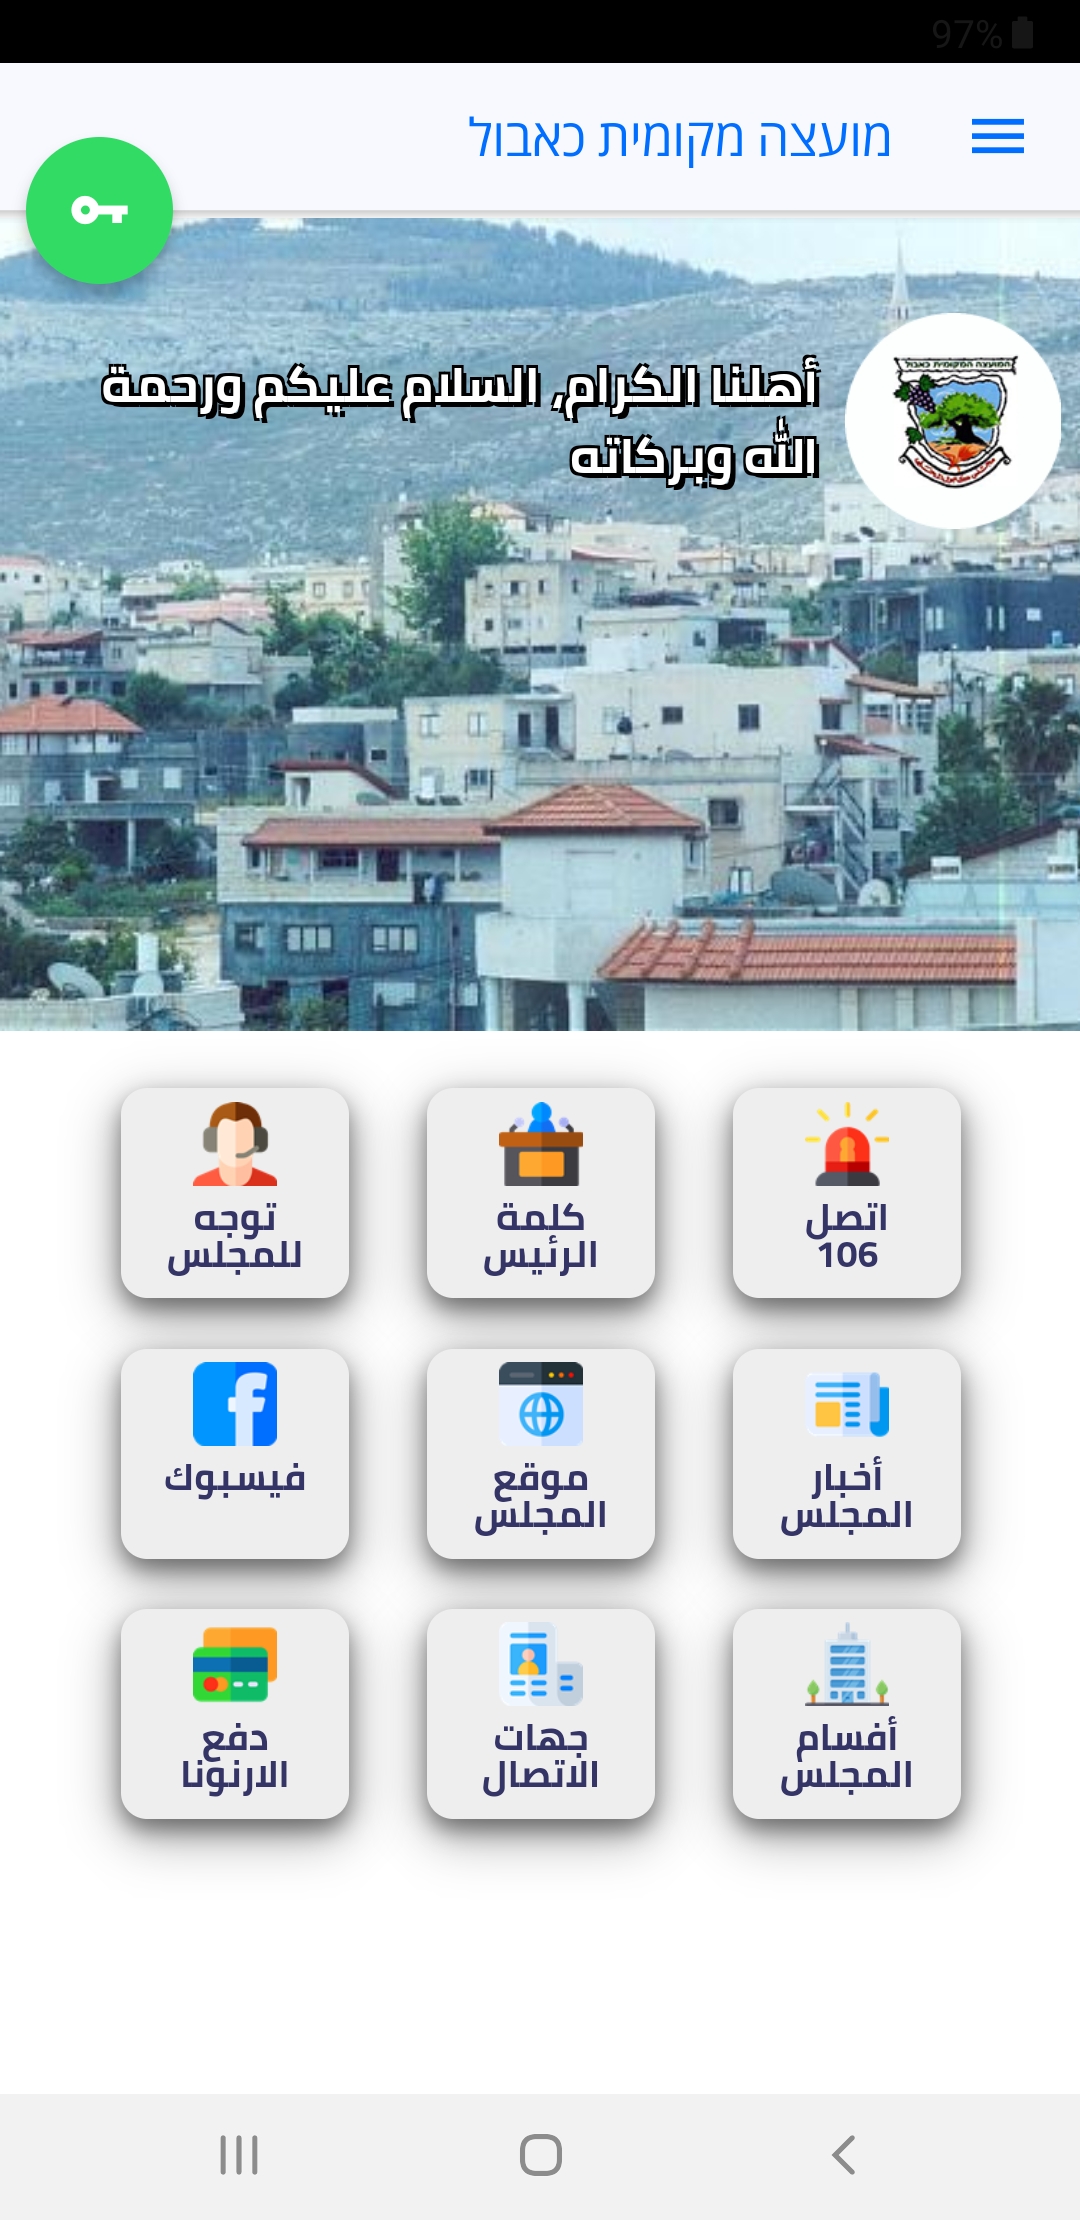 אפליקציית מוקד עירוני - citycall center לדיווח על מפגעים בכפר